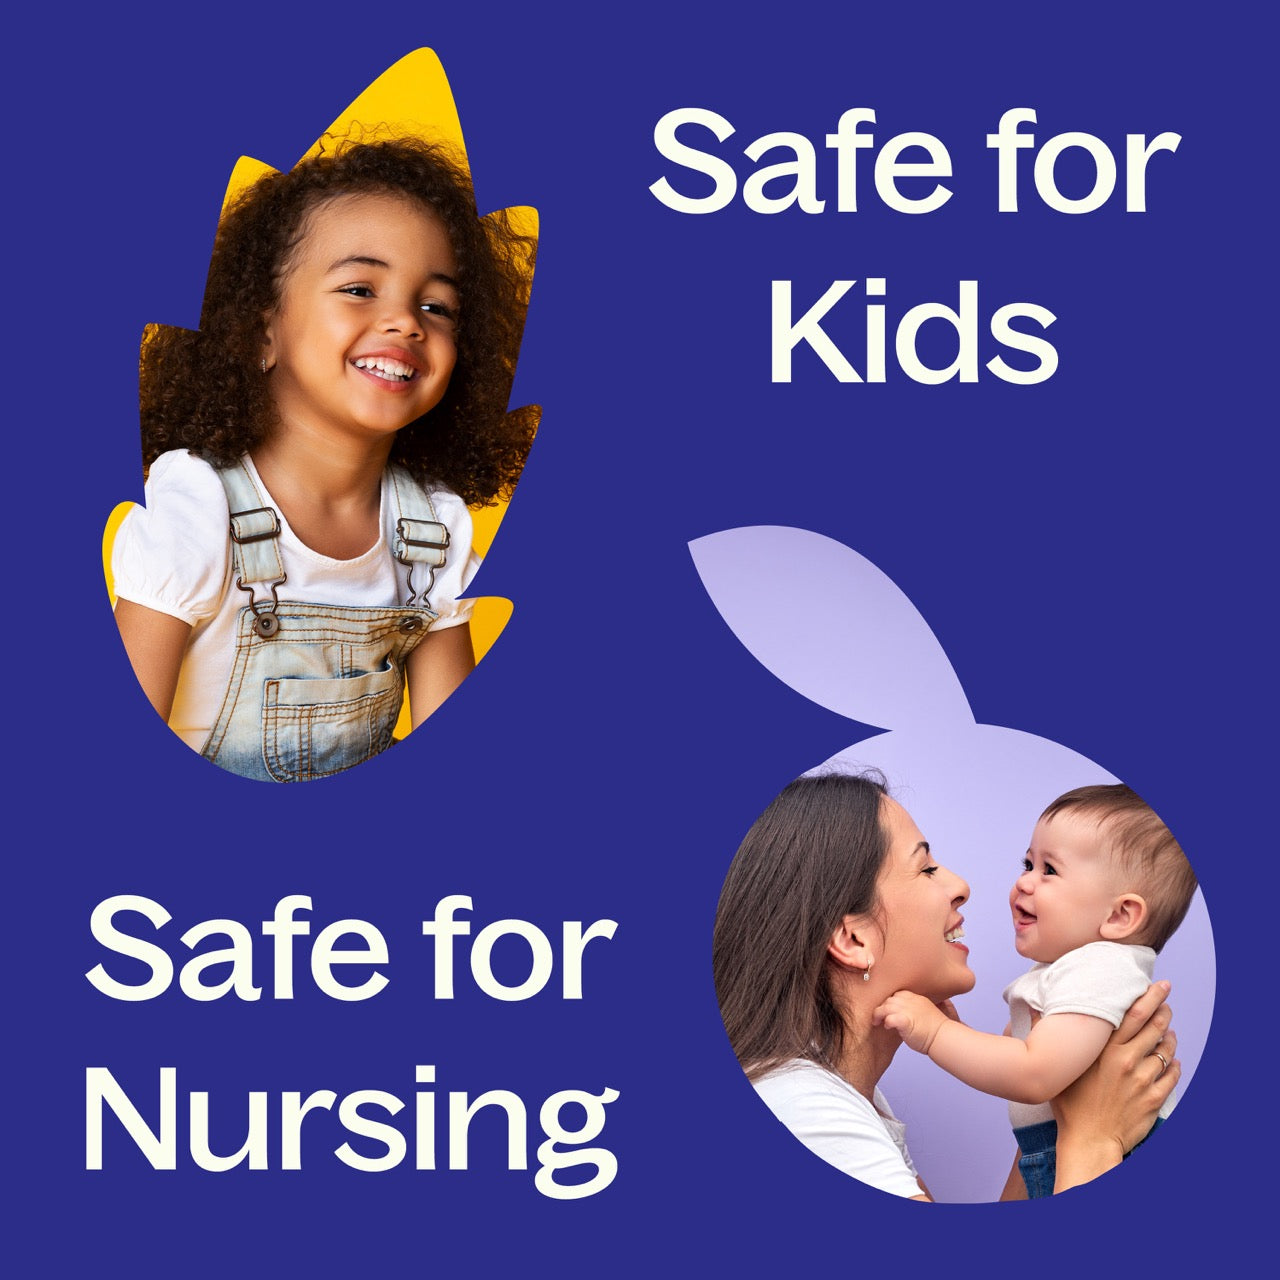 KidSafe Starter Pack 10 mL is safe for kids and nursing